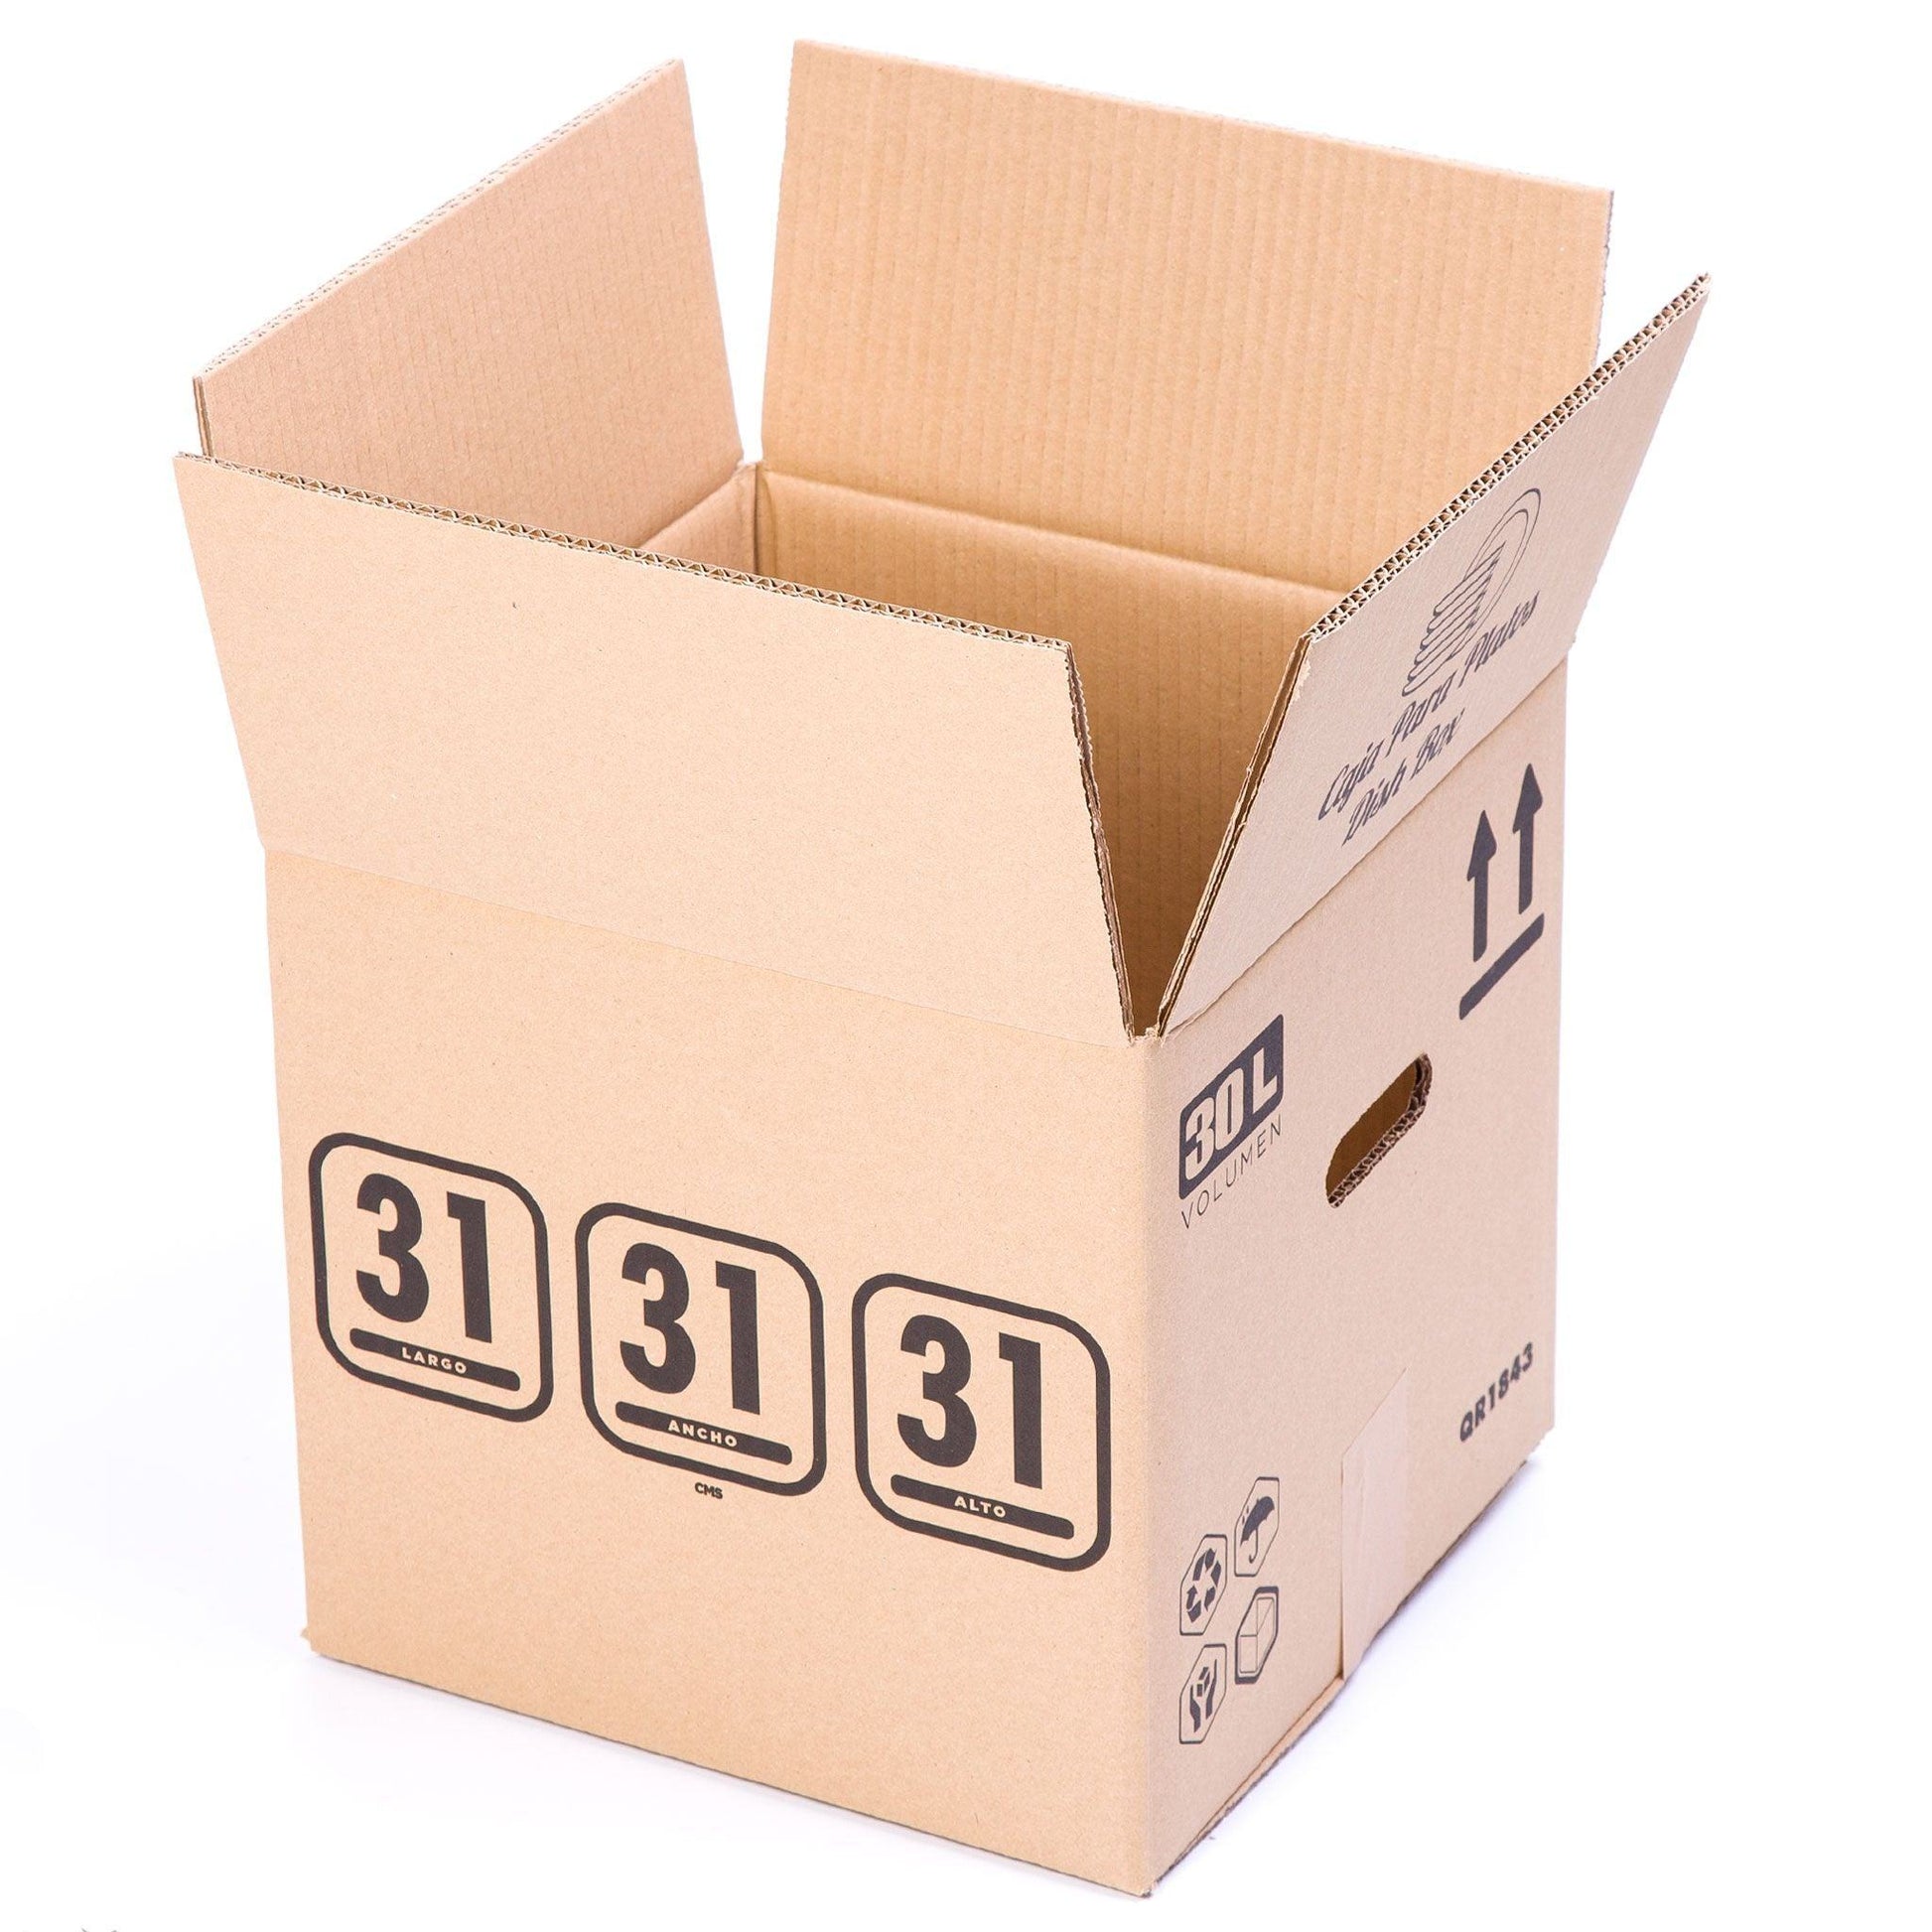 TELECAJAS | 10 Cajas 31x31x31 cm para Platos, Vajillas o Sombreros | Cajas Cuadradas con Asas | Pack de 10 - TELECAJAS